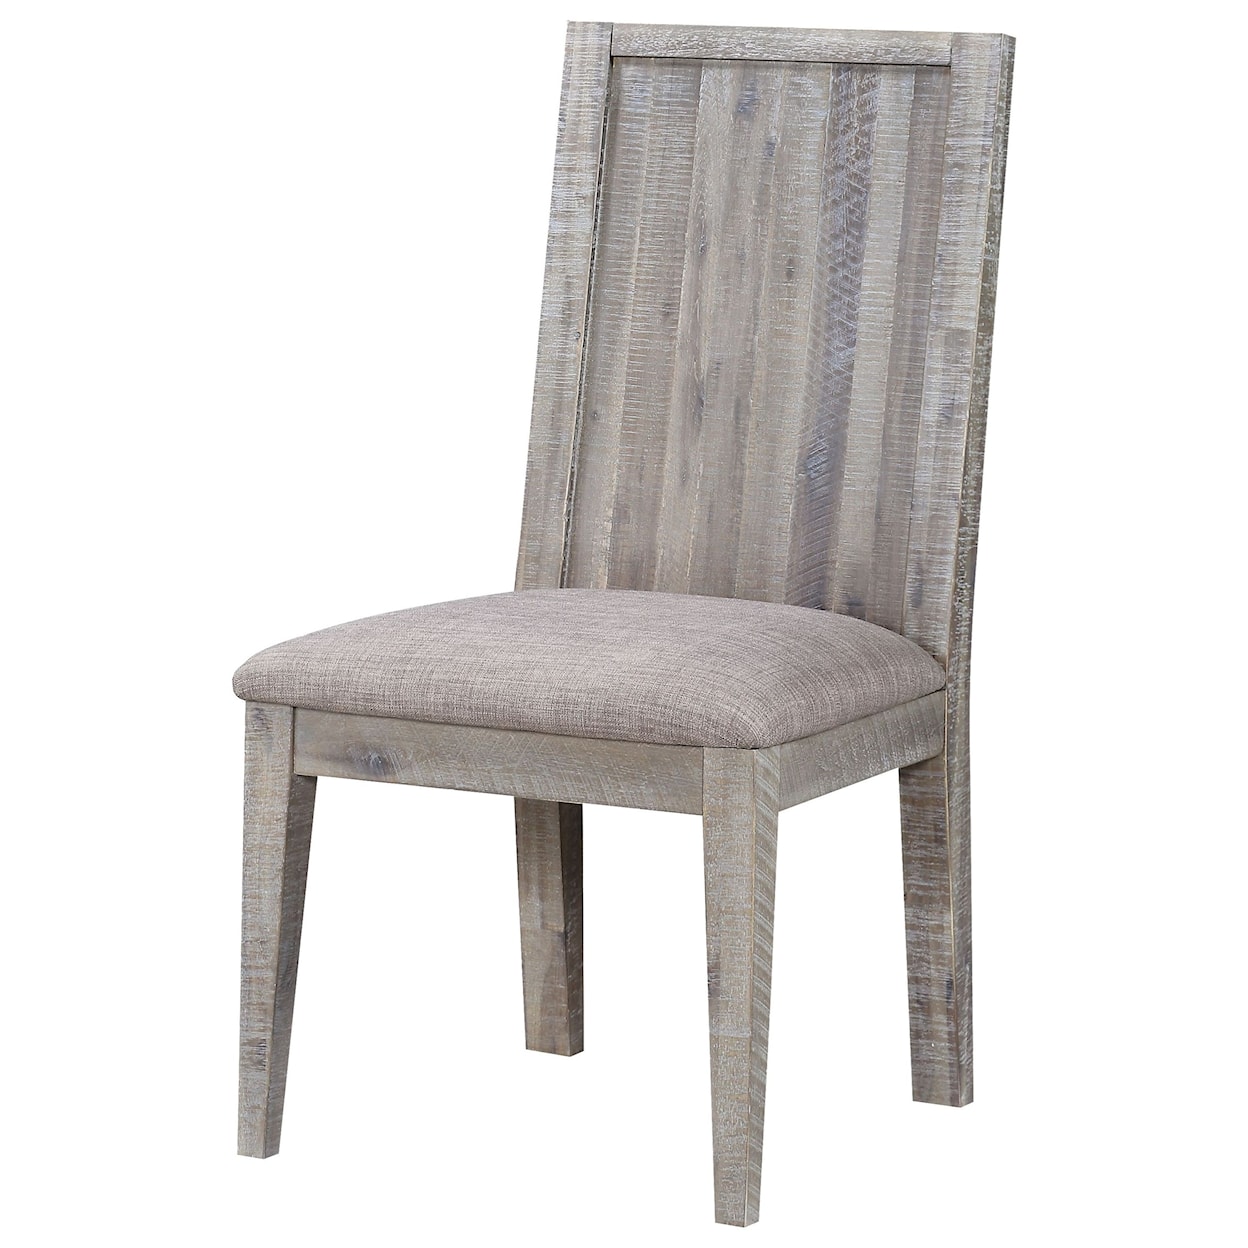 Modus International Alexandra Upholstered Chair